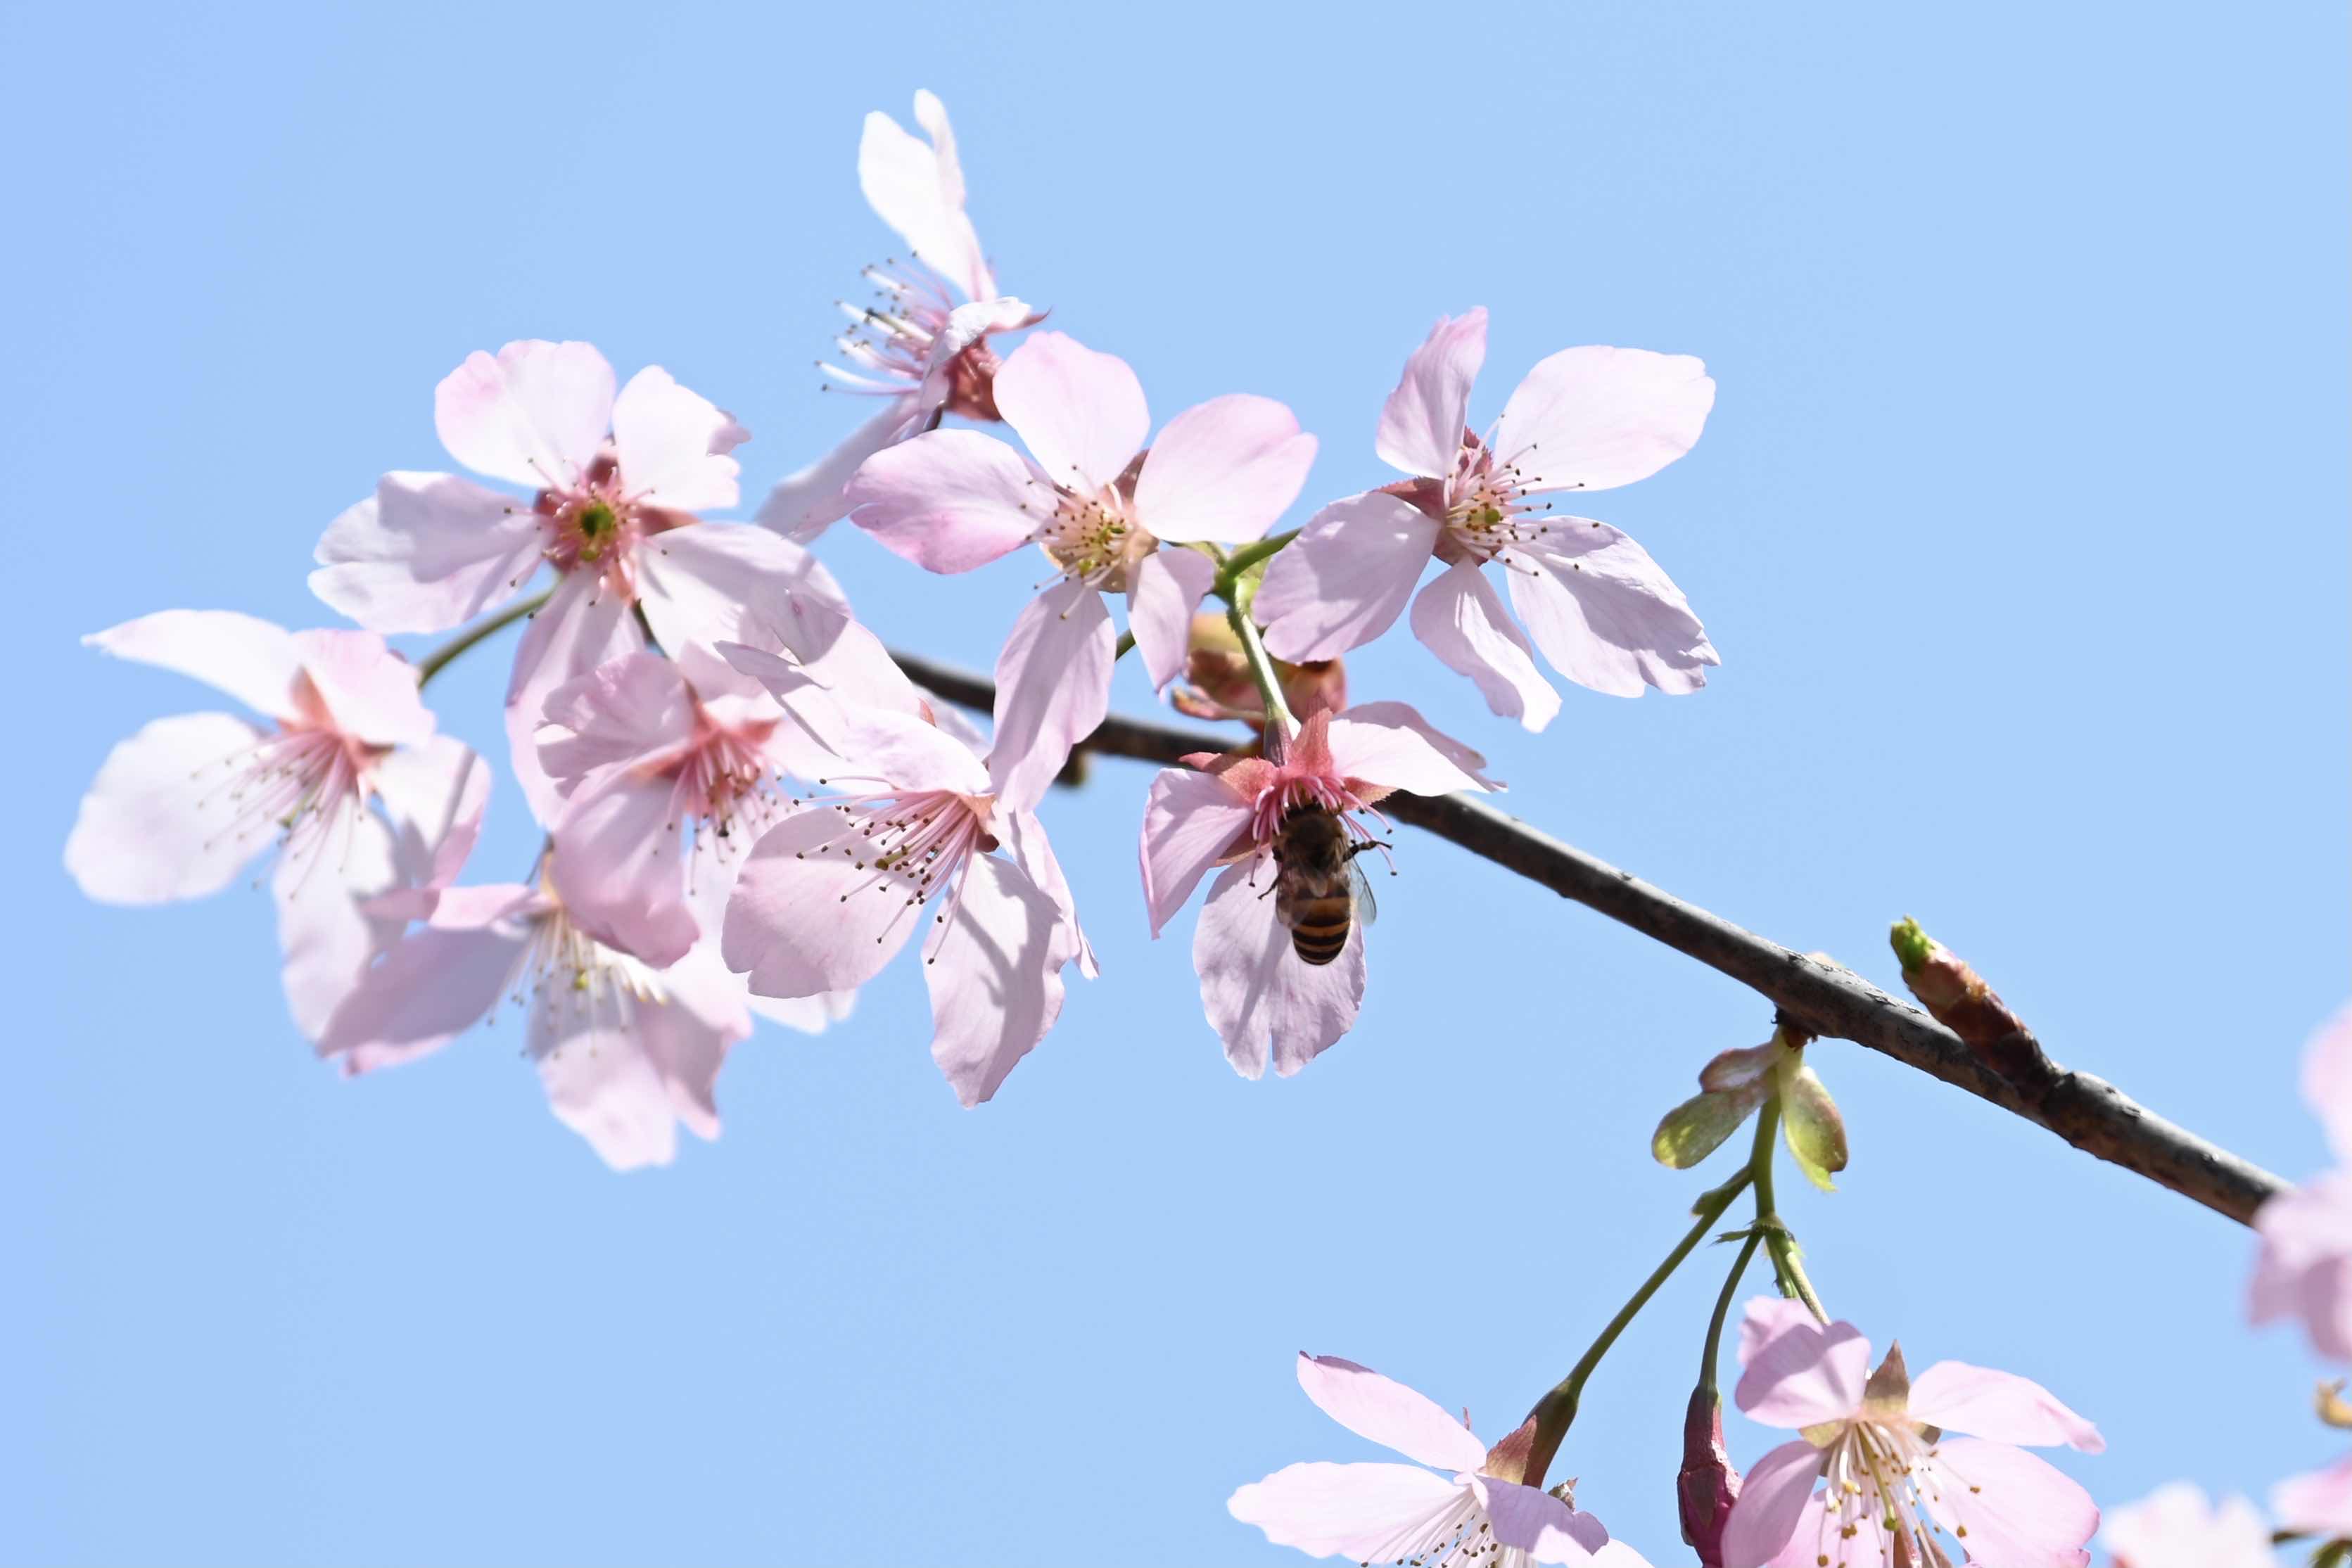 关注 | “2019上海樱花节”于3月15日盛大开幕，赏樱攻略、活动安排...赶紧收藏这篇干货，让你玩转樱花节！_游客